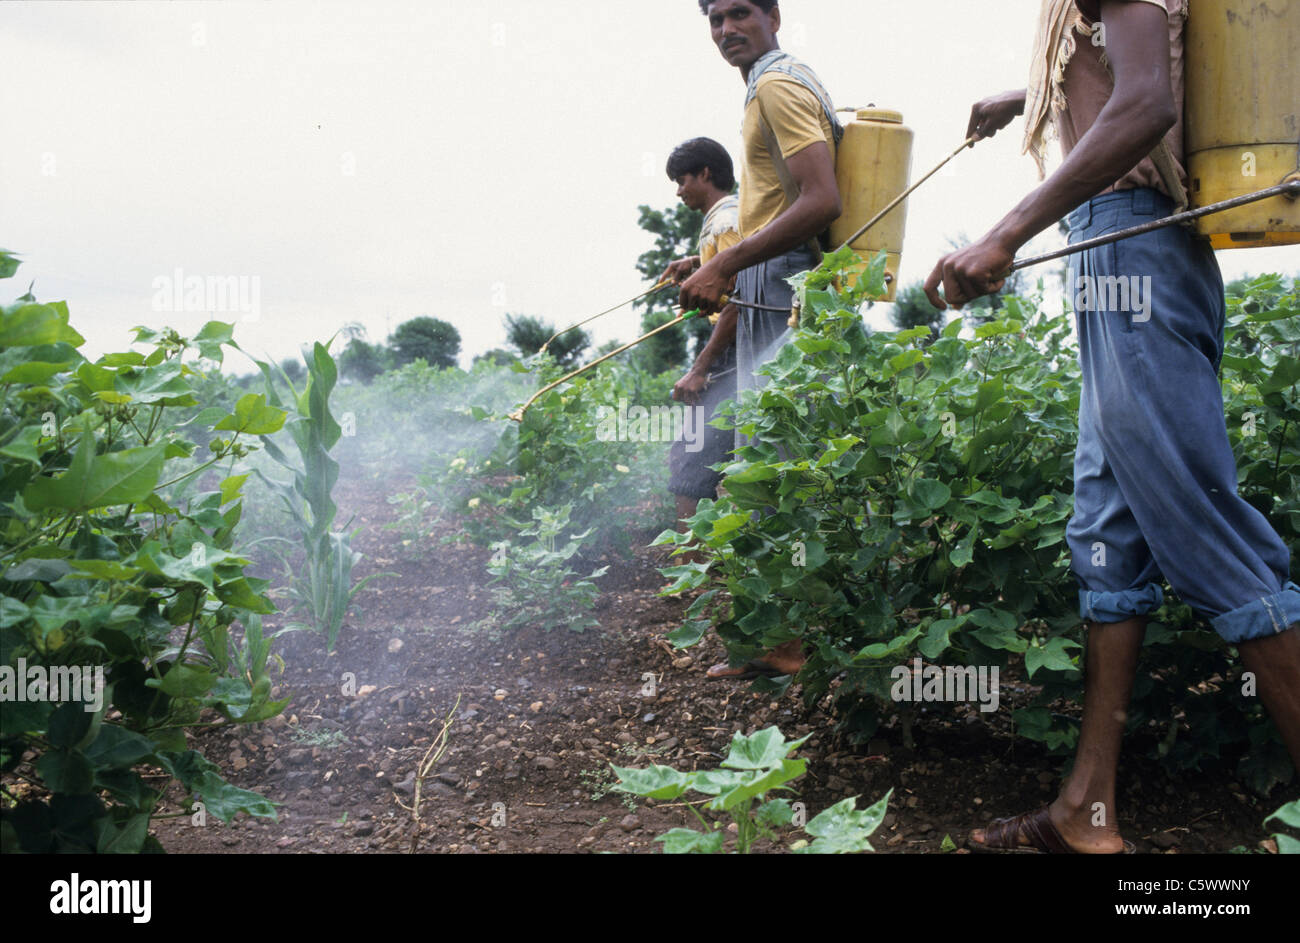 Indien Madhya Pradesh, landwirtschaftlichen Arbeitnehmers Spray eine chemische  Schädlingsbekämpfungsmittel Herbizid Cocktail in genetisch veränderter Bt  Baumwolle Feld gegen Schädlinge wie Bollworm und Unkraut Stockfotografie -  Alamy